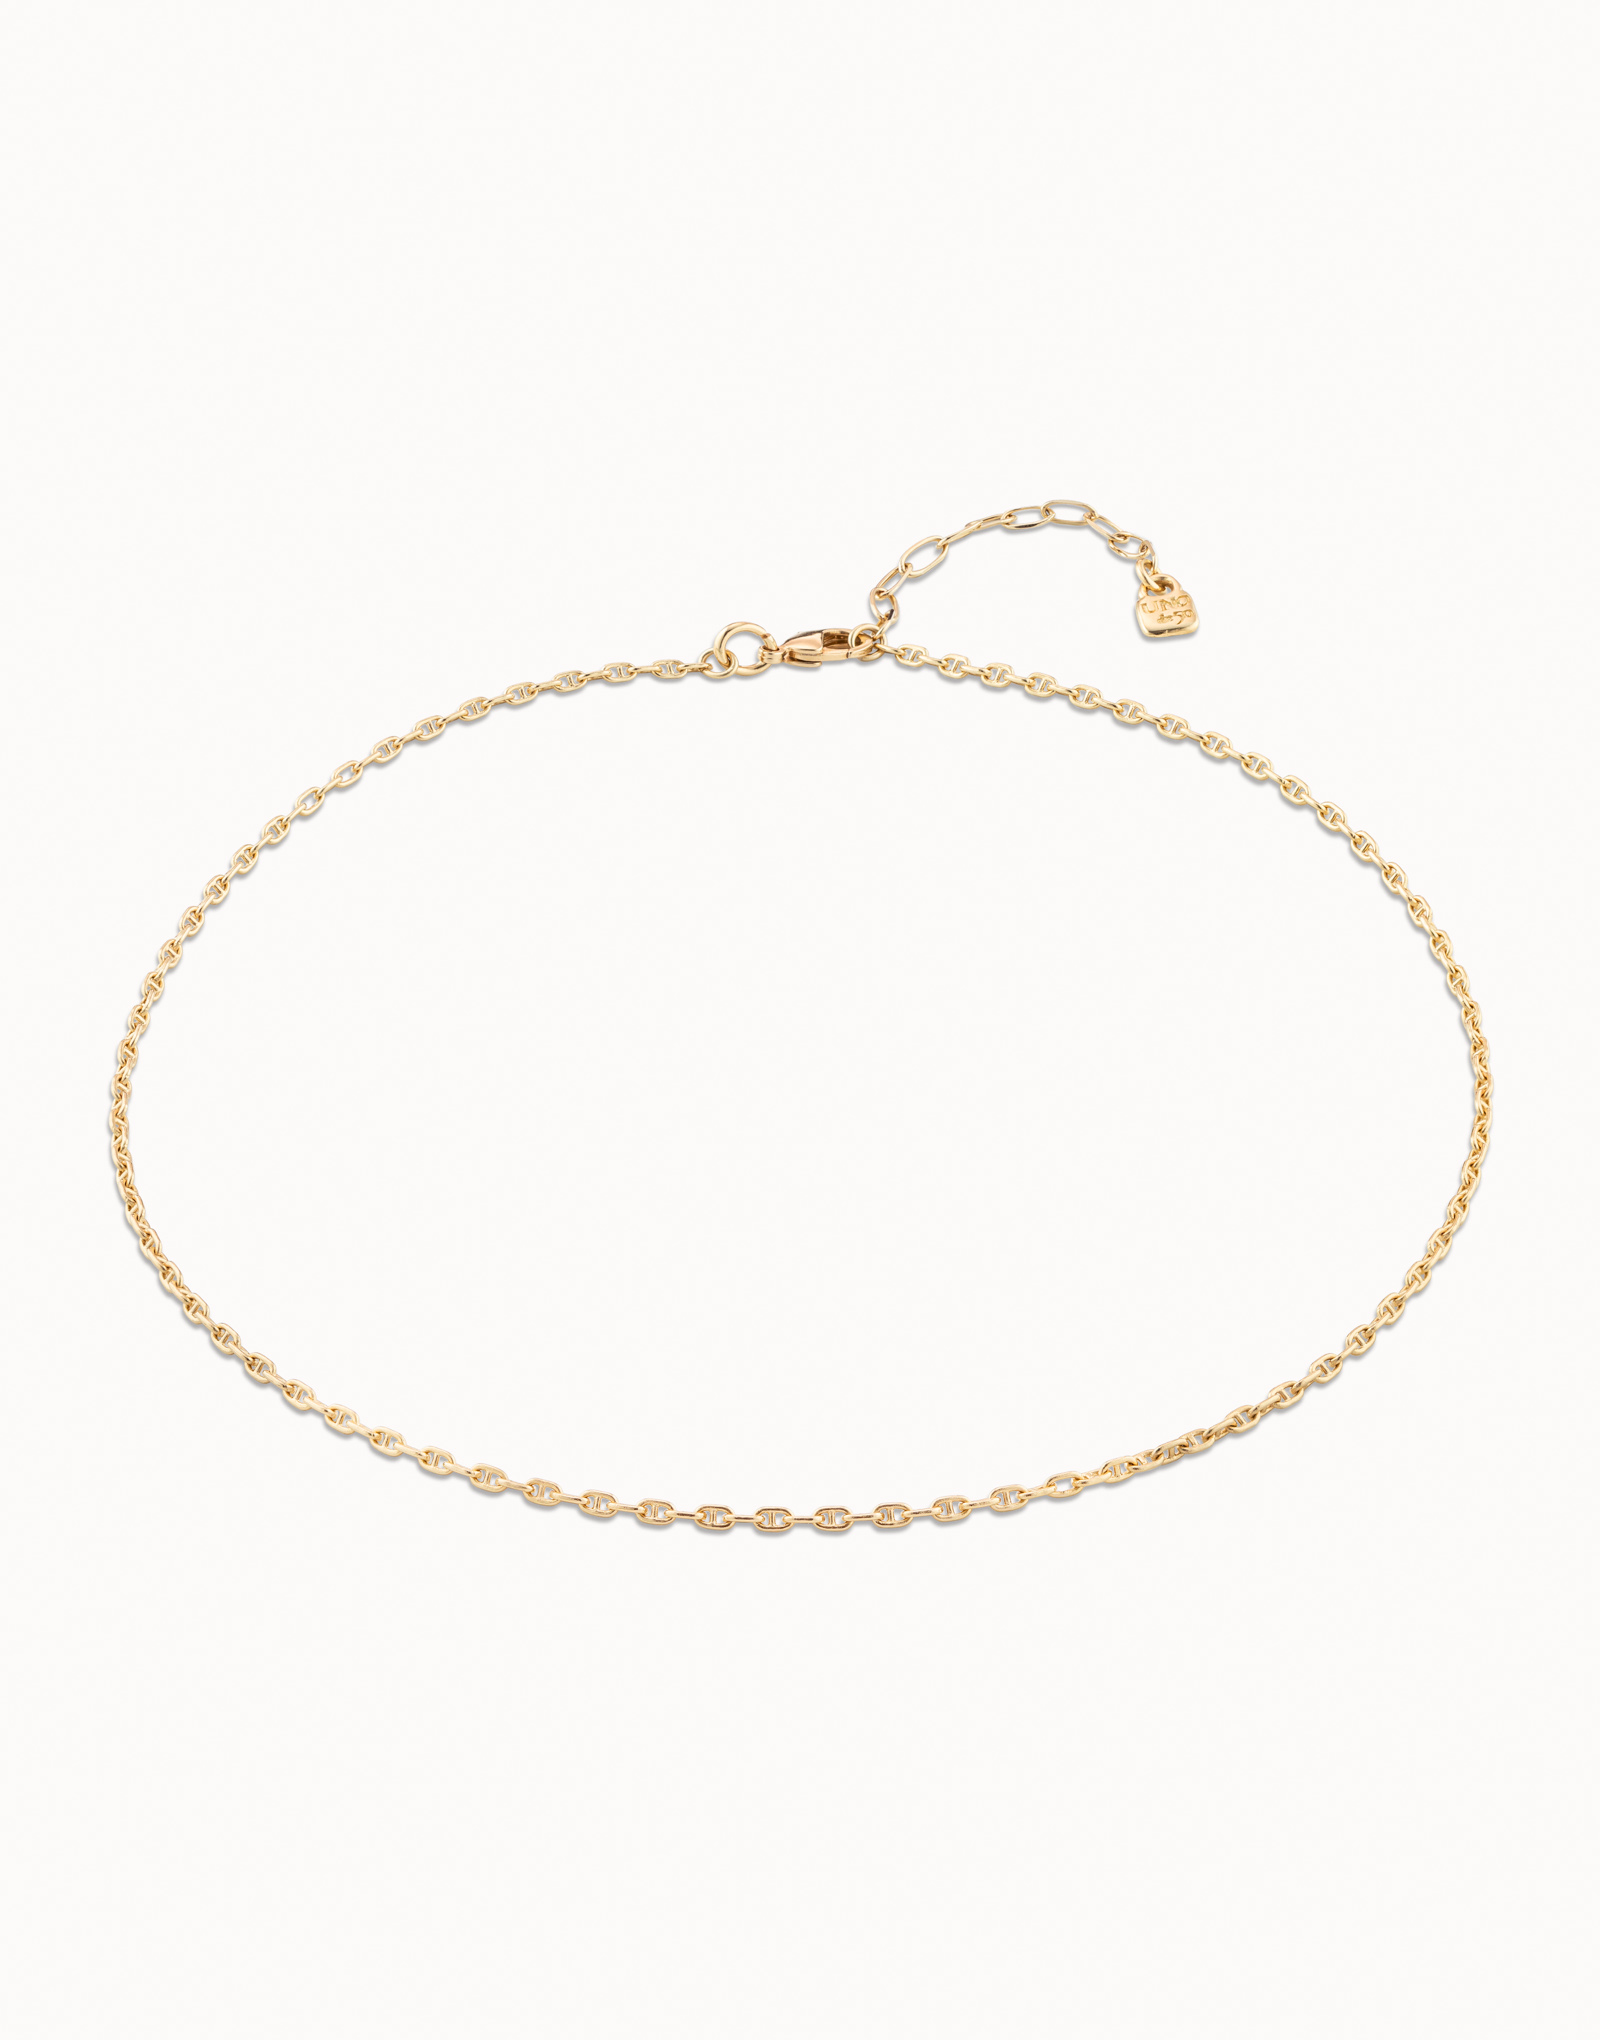 Necklace CADENA 5, Golden, large image number null